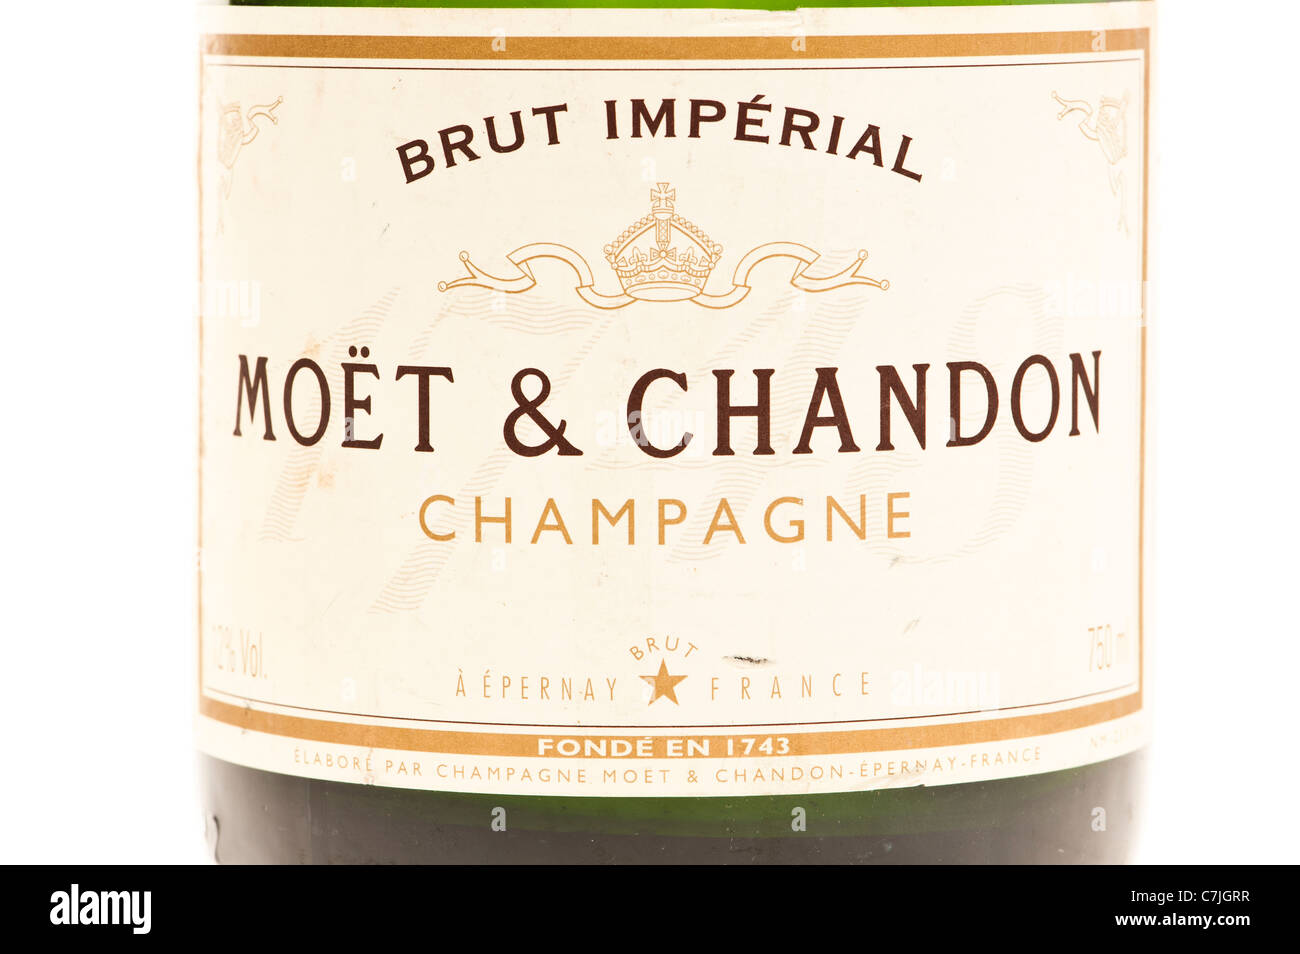 Una etiqueta en una botella de Moet y Chandon Brut Imperial champagne sobre un fondo con retroiluminación blanca Foto de stock